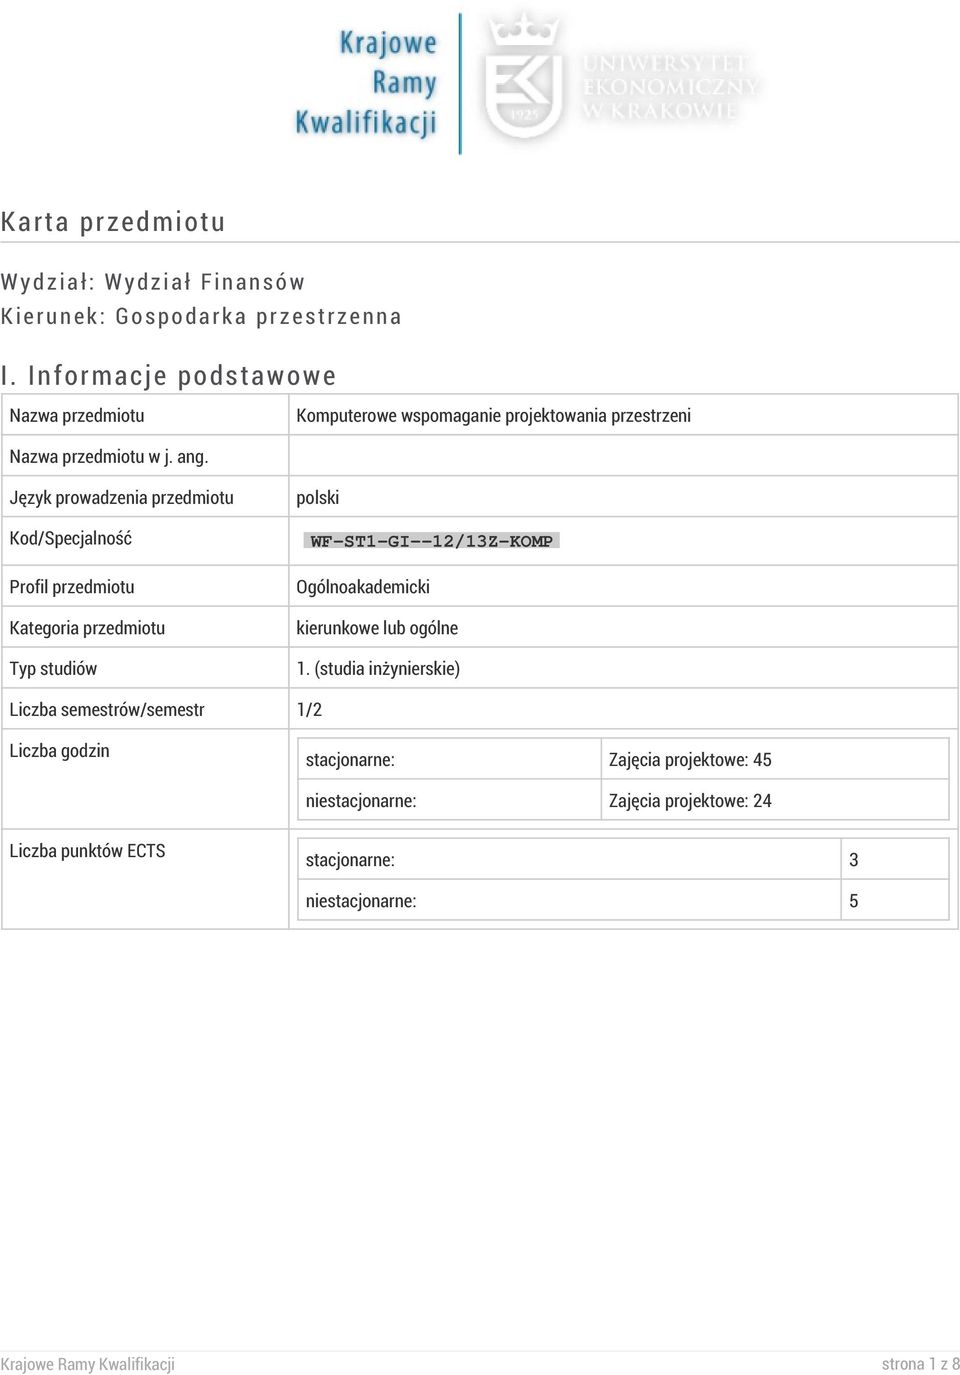 Język prowadzenia przedmiotu Kod/Specjalność Profil przedmiotu Kategoria przedmiotu Typ studiów polski WF-ST1-GI--12/13Z-KOMP Ogólnoakademicki